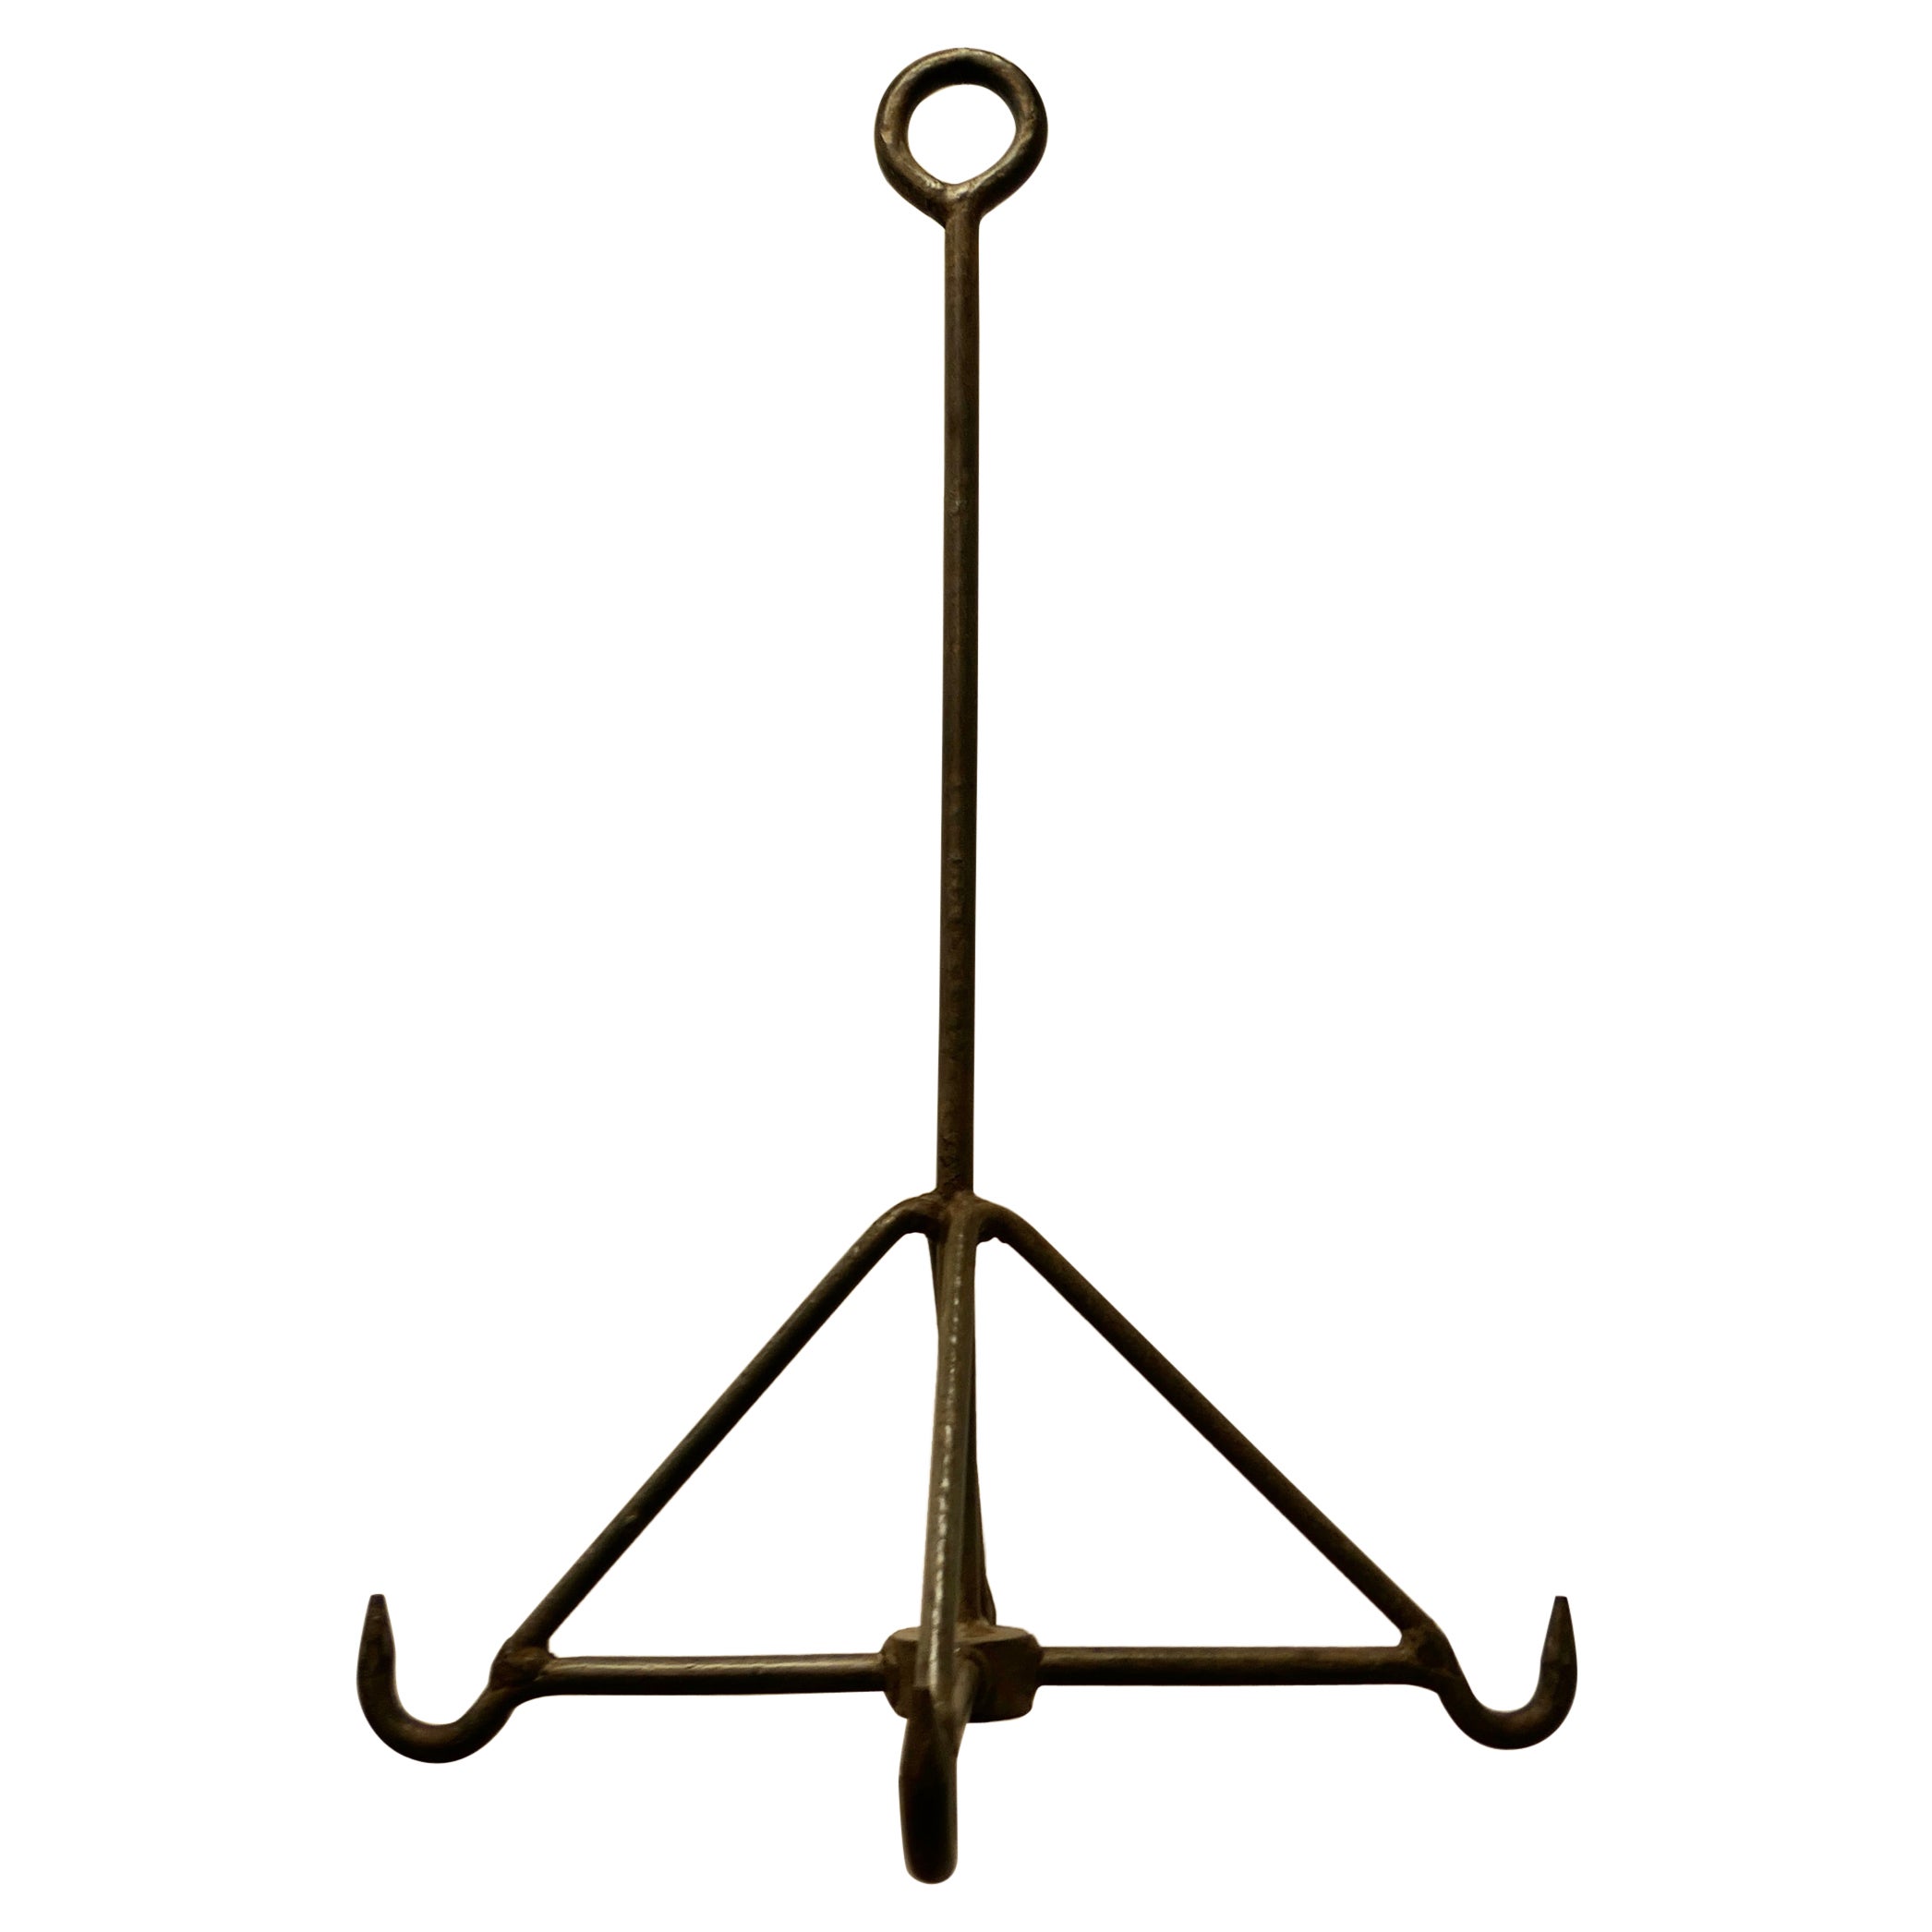  Blacksmith Made Iron Game Hanger, Kitchen Utensil or Pot Hanger  